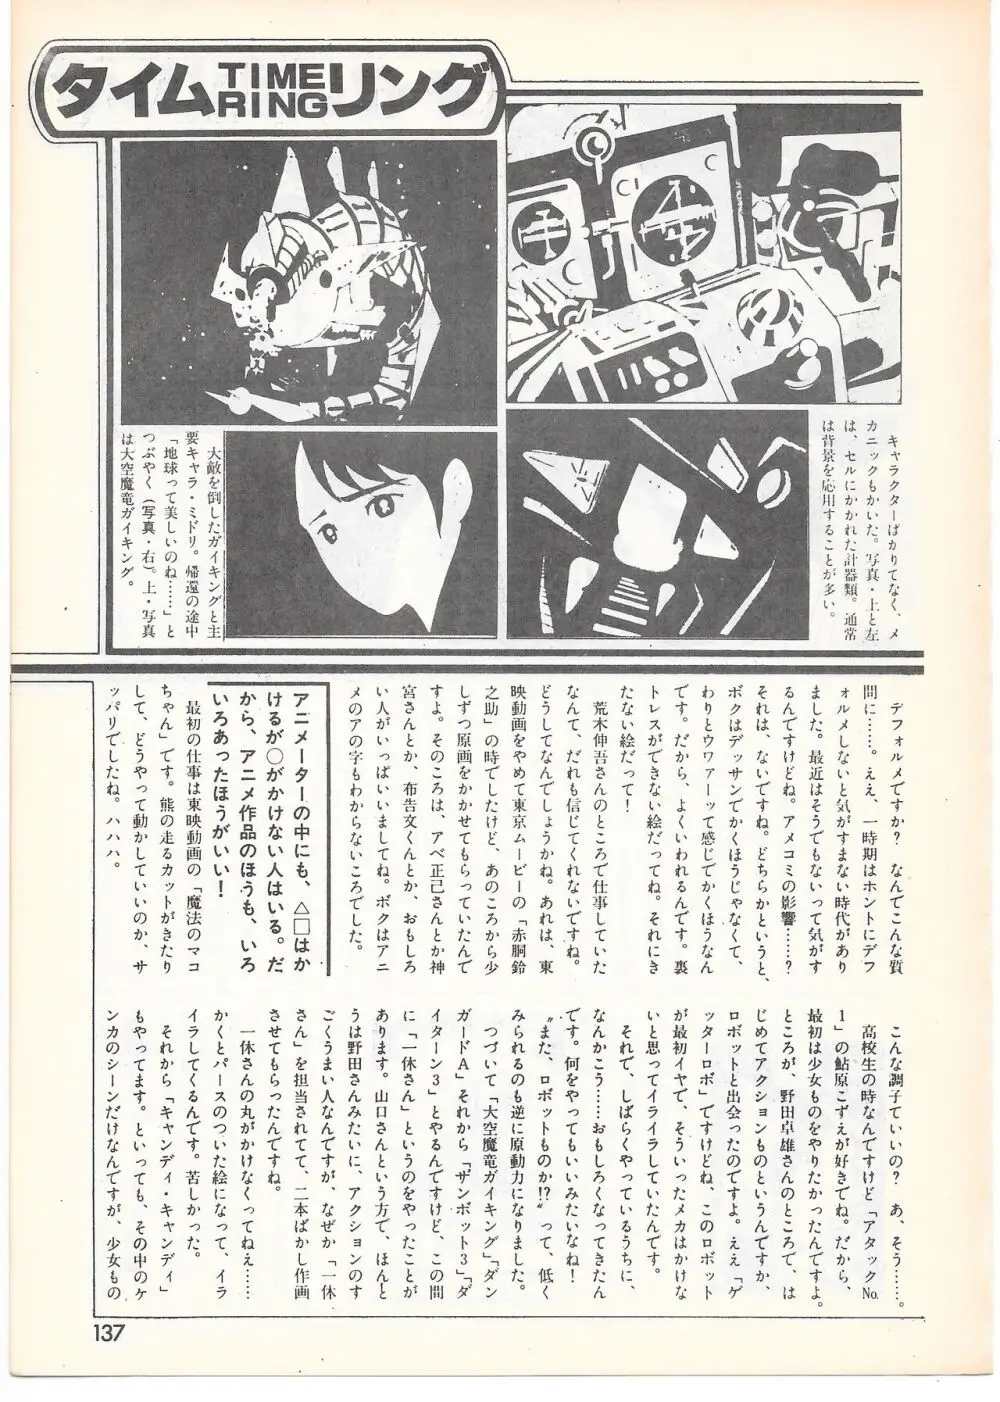 THE ANIMATOR 1 金田伊功特集号 132ページ